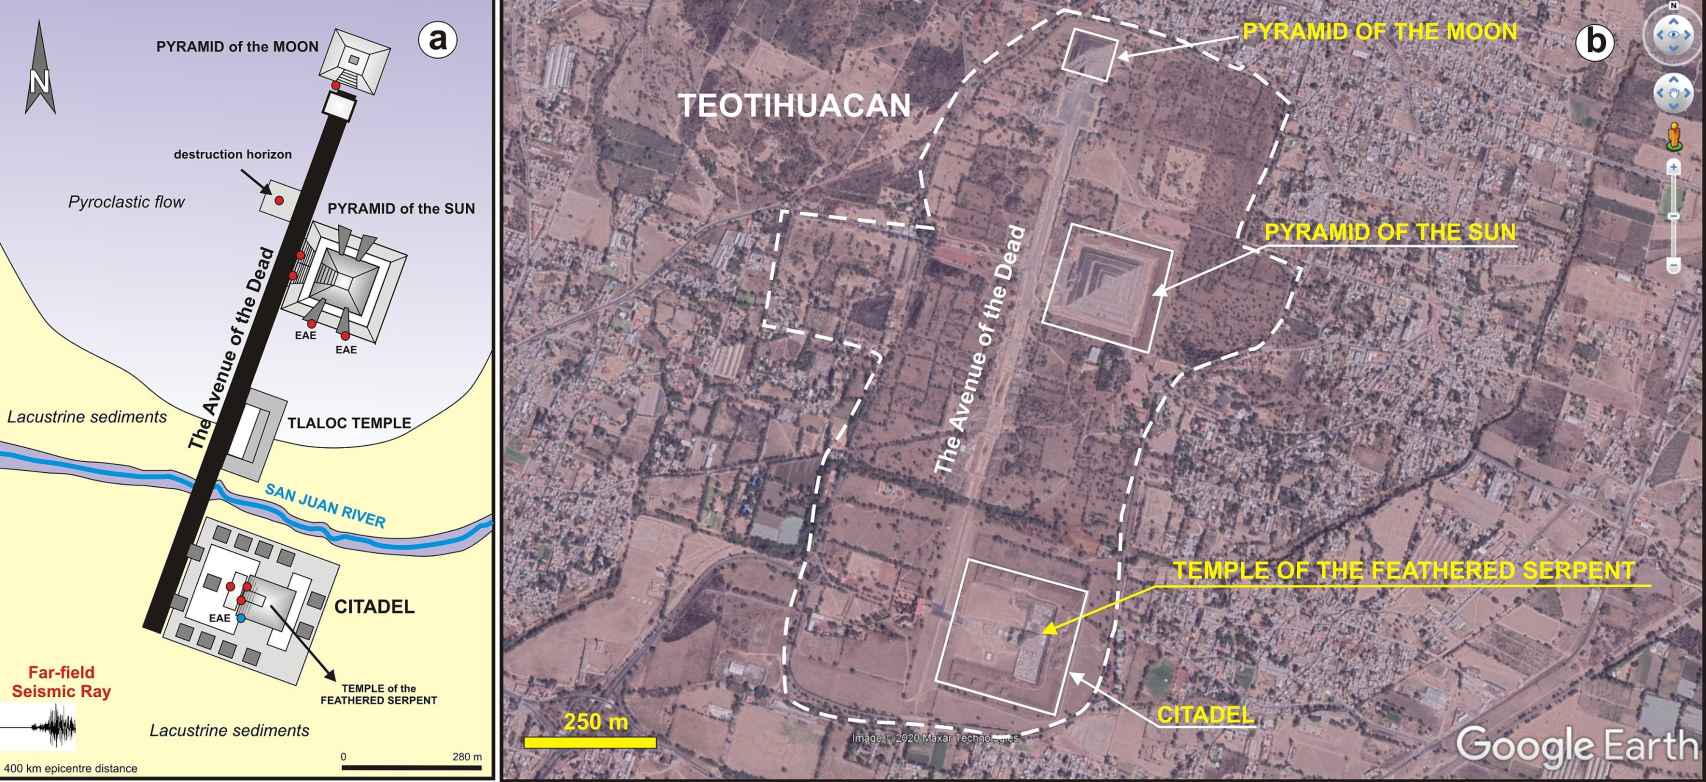 Plano y vista aérea de la ciudad de Teotihuacán.